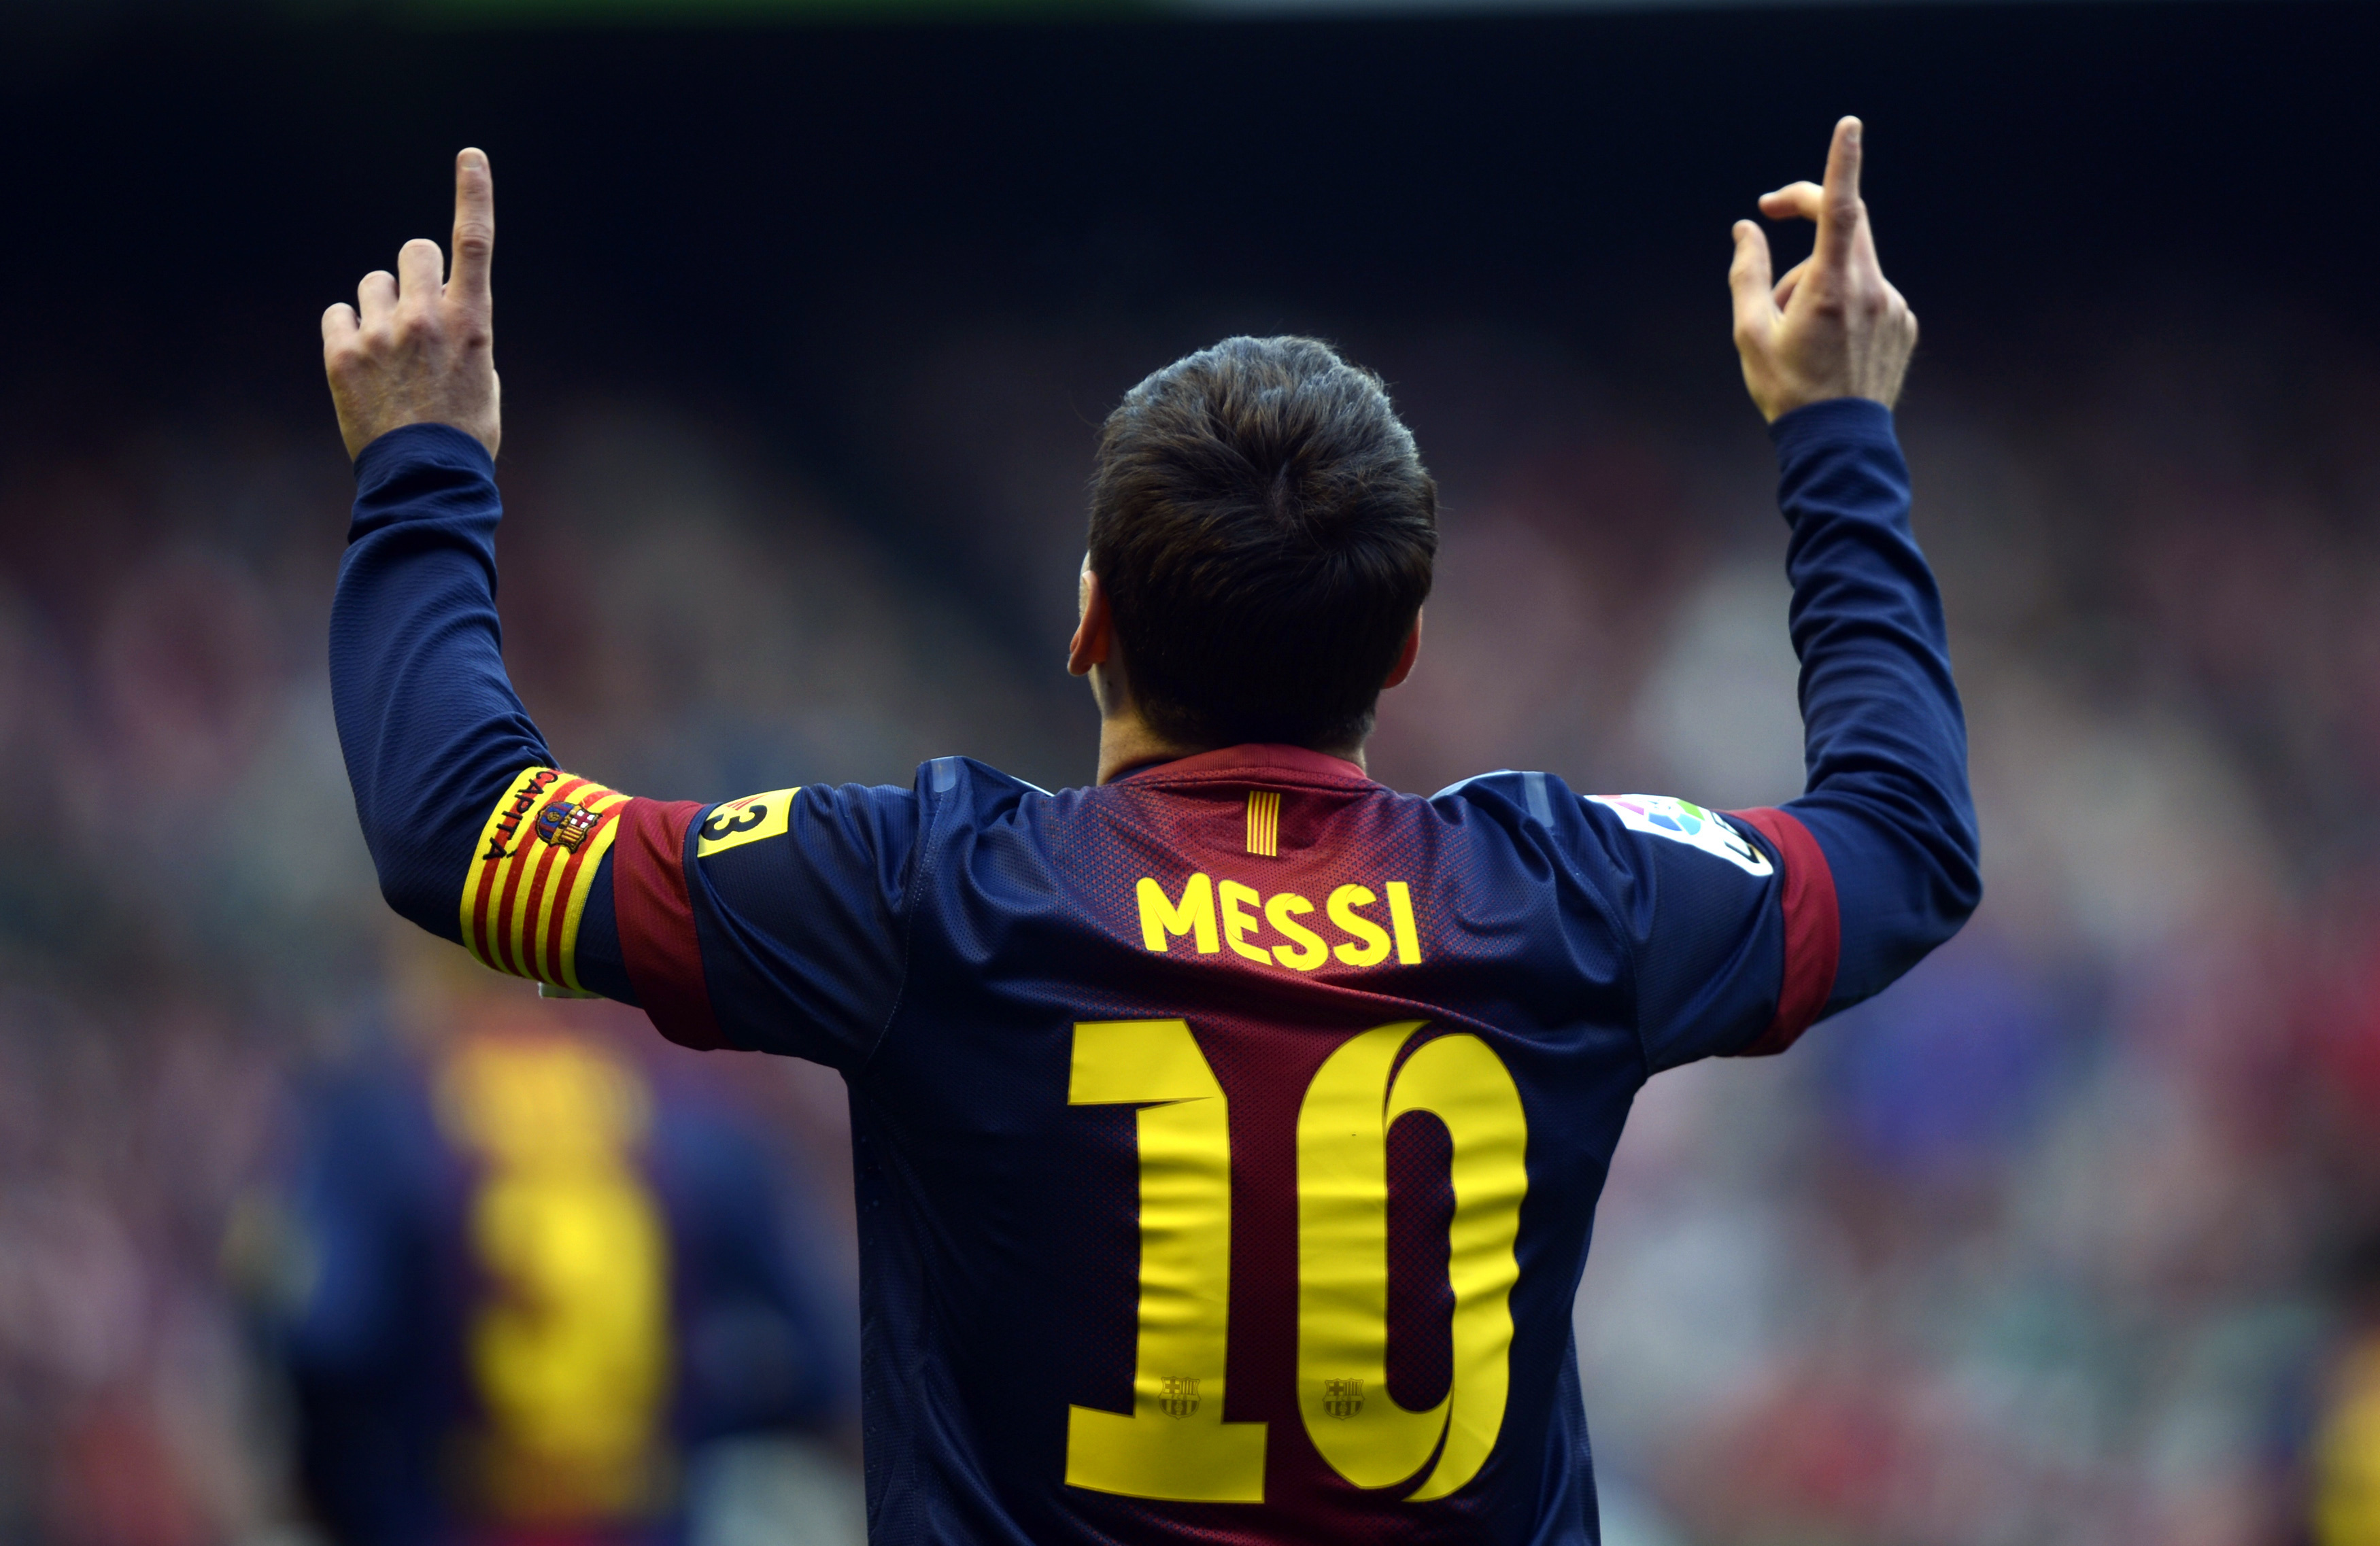 Hãy chiêm ngưỡng nền tảng của bạn bởi hình nền Messi đầy sức hút.